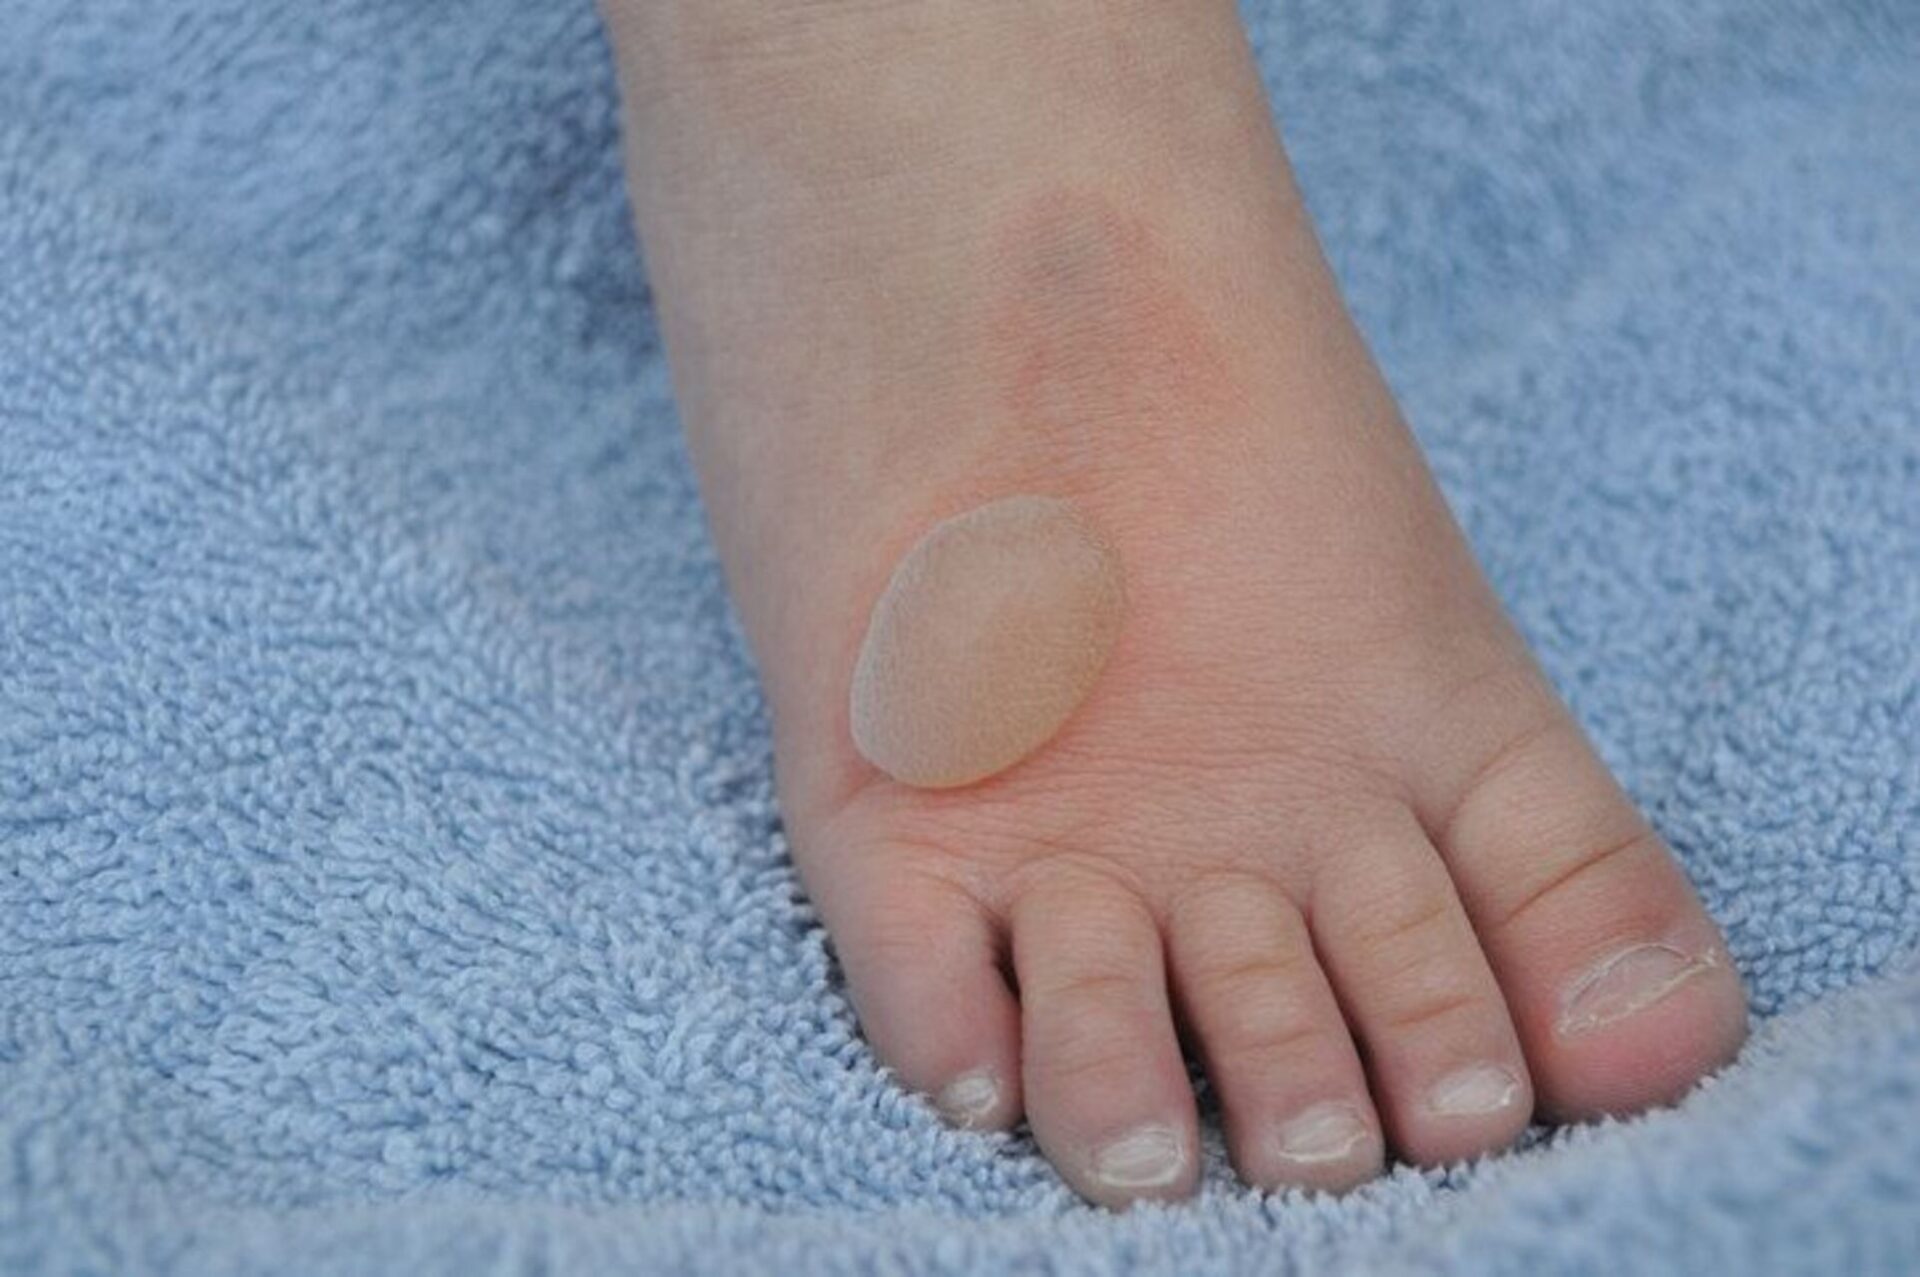 Paediatric Foot Blisters in kids